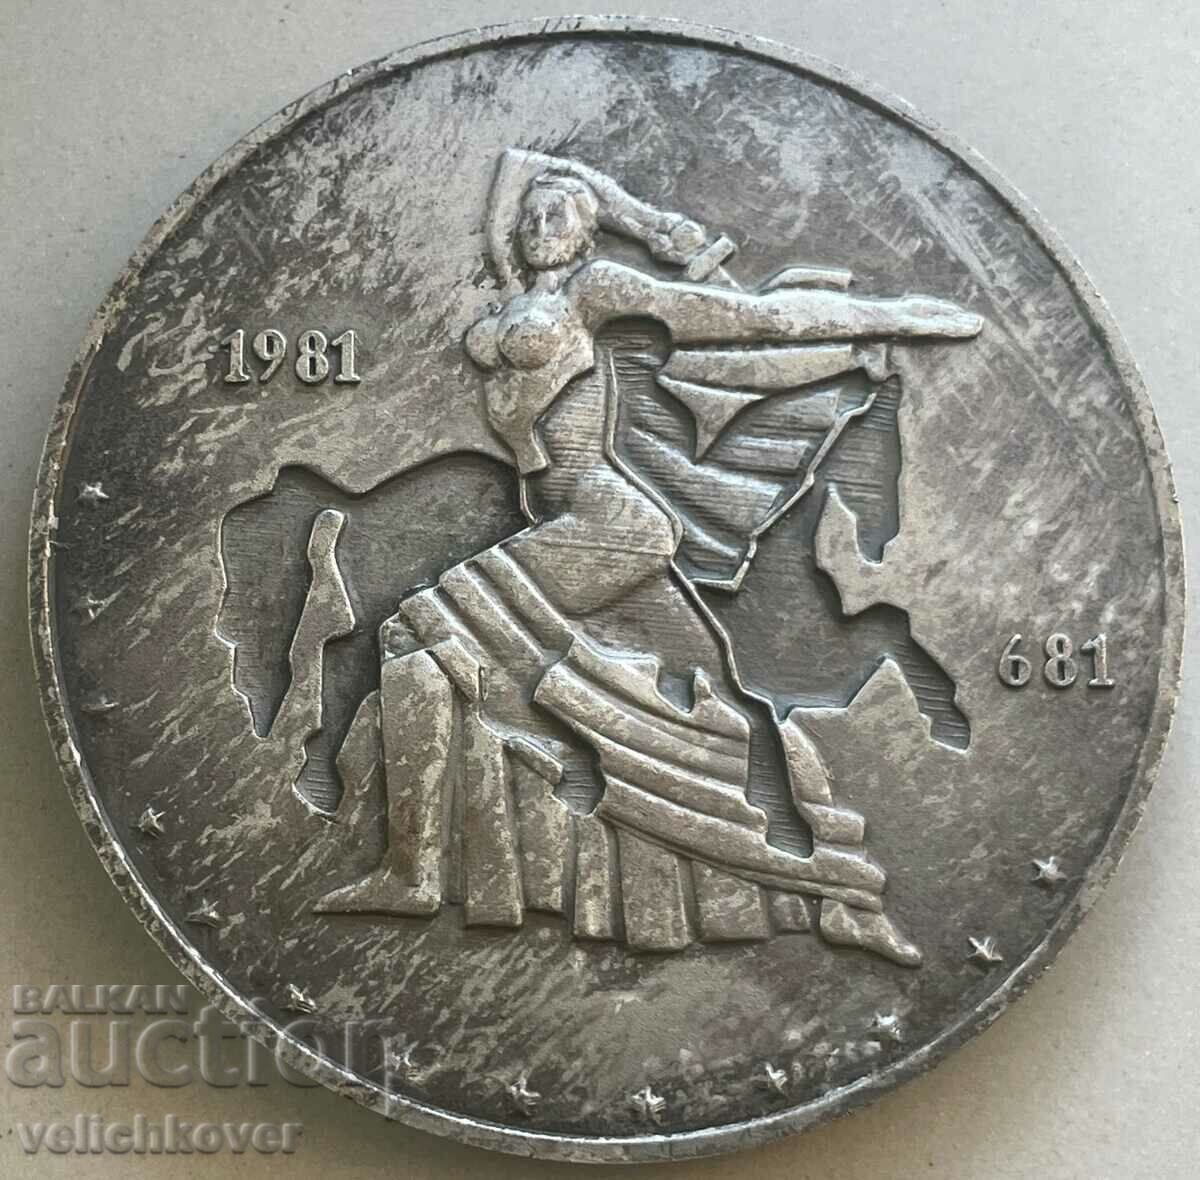 32923 Bulgaria plaque 1300 Bulgaria 681-1981 Rare